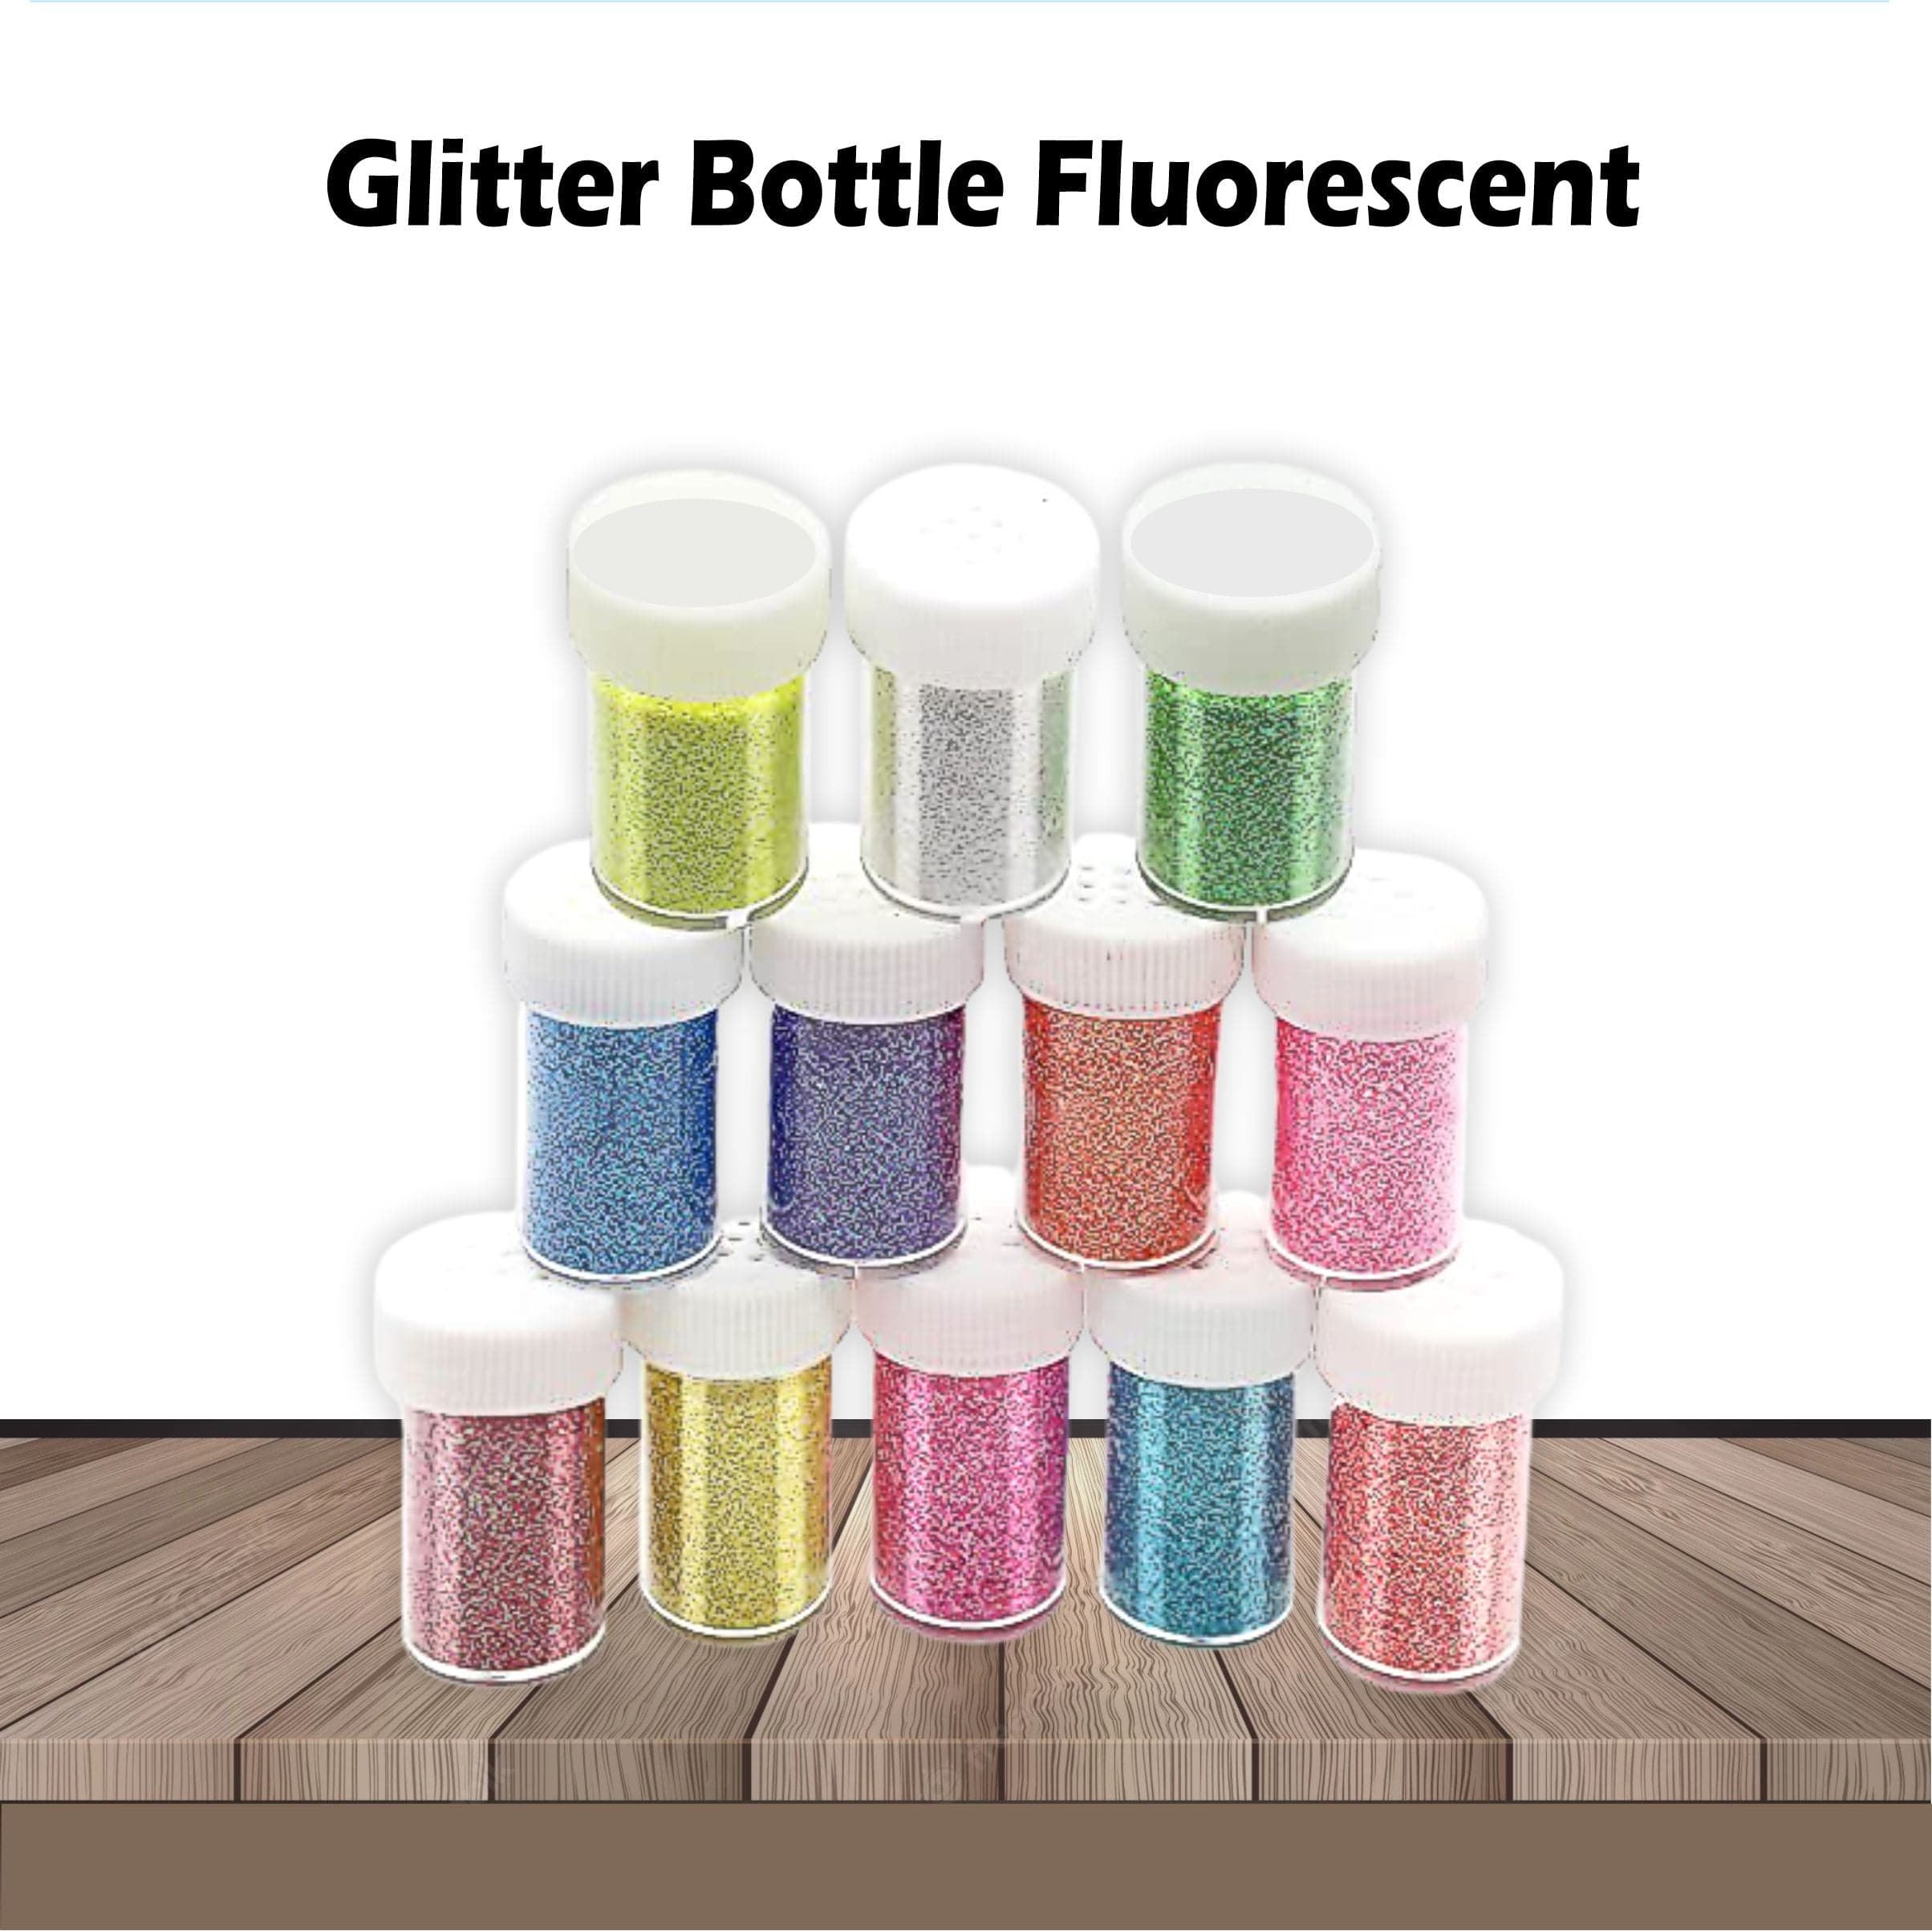 Fluorescent Glitter Bottle Pack of 12